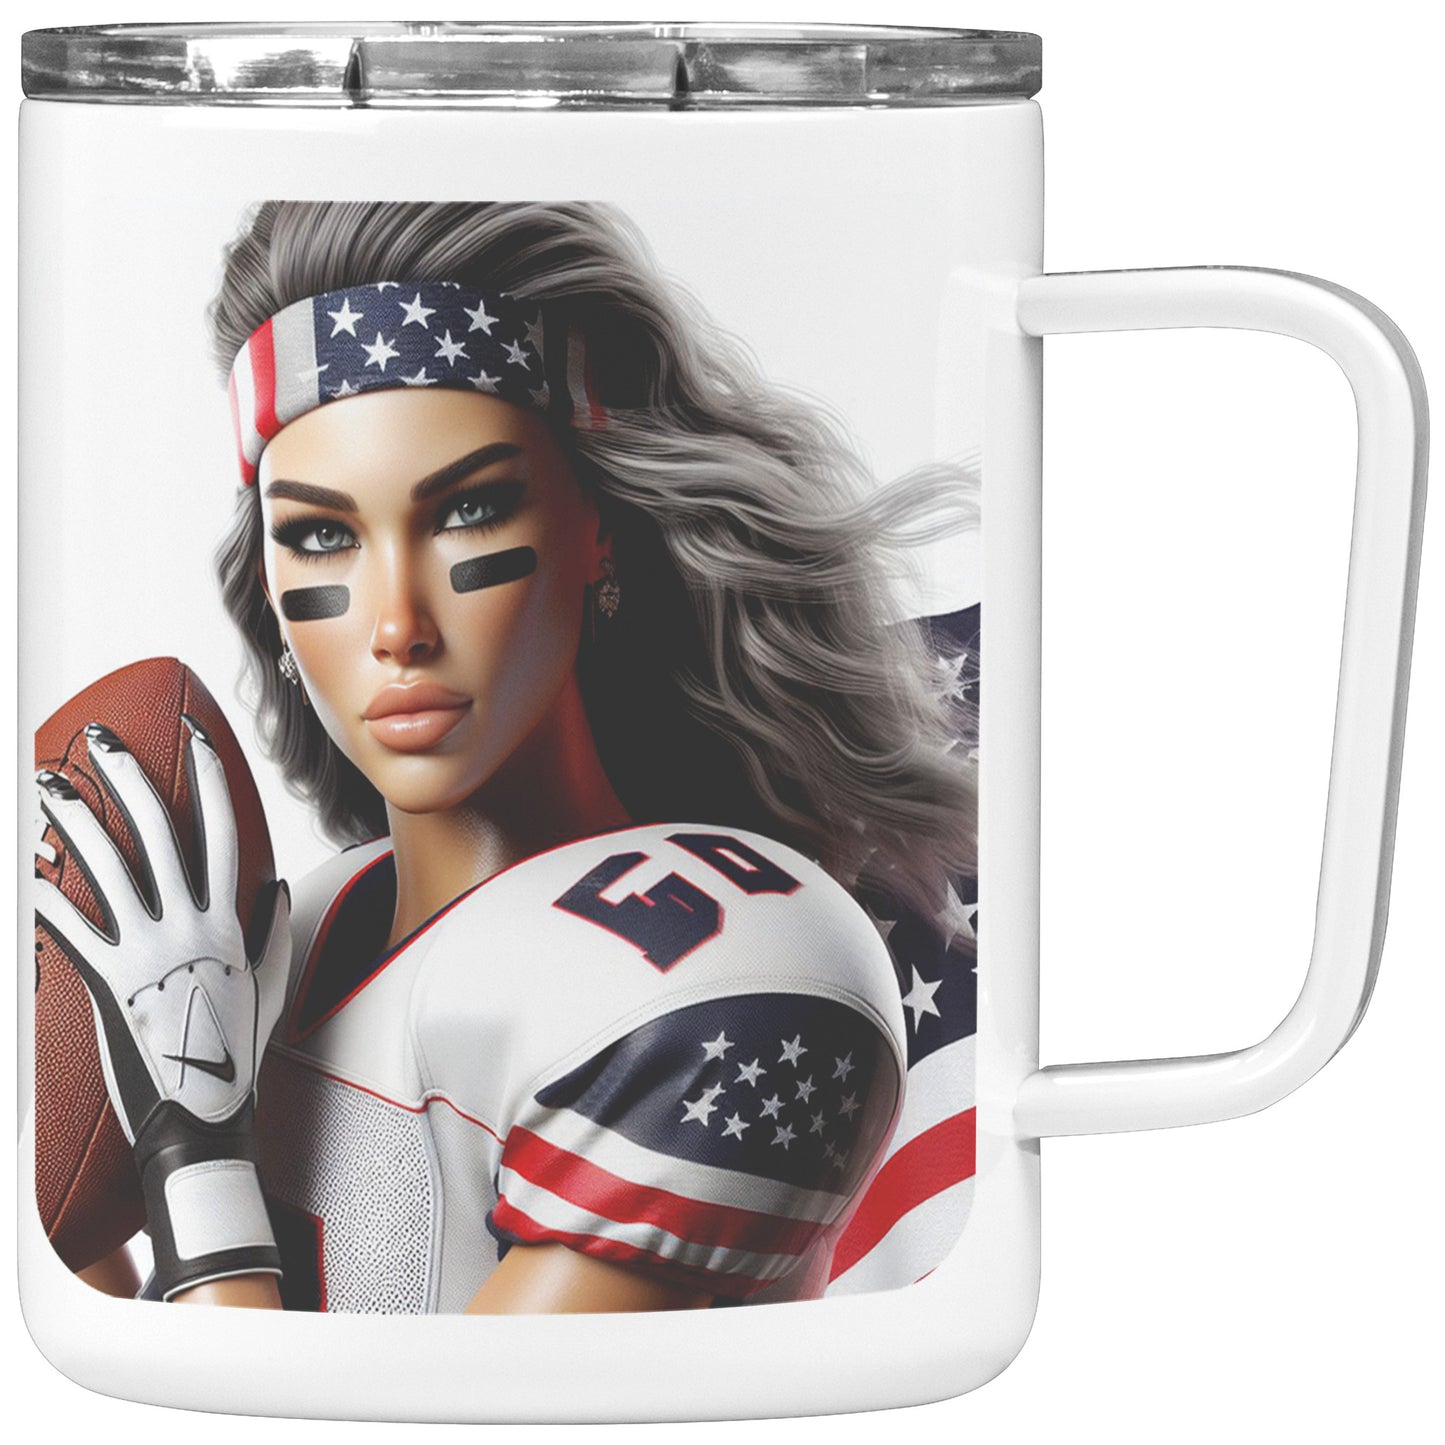 Woman Football Player - Insulated Coffee Mug #28